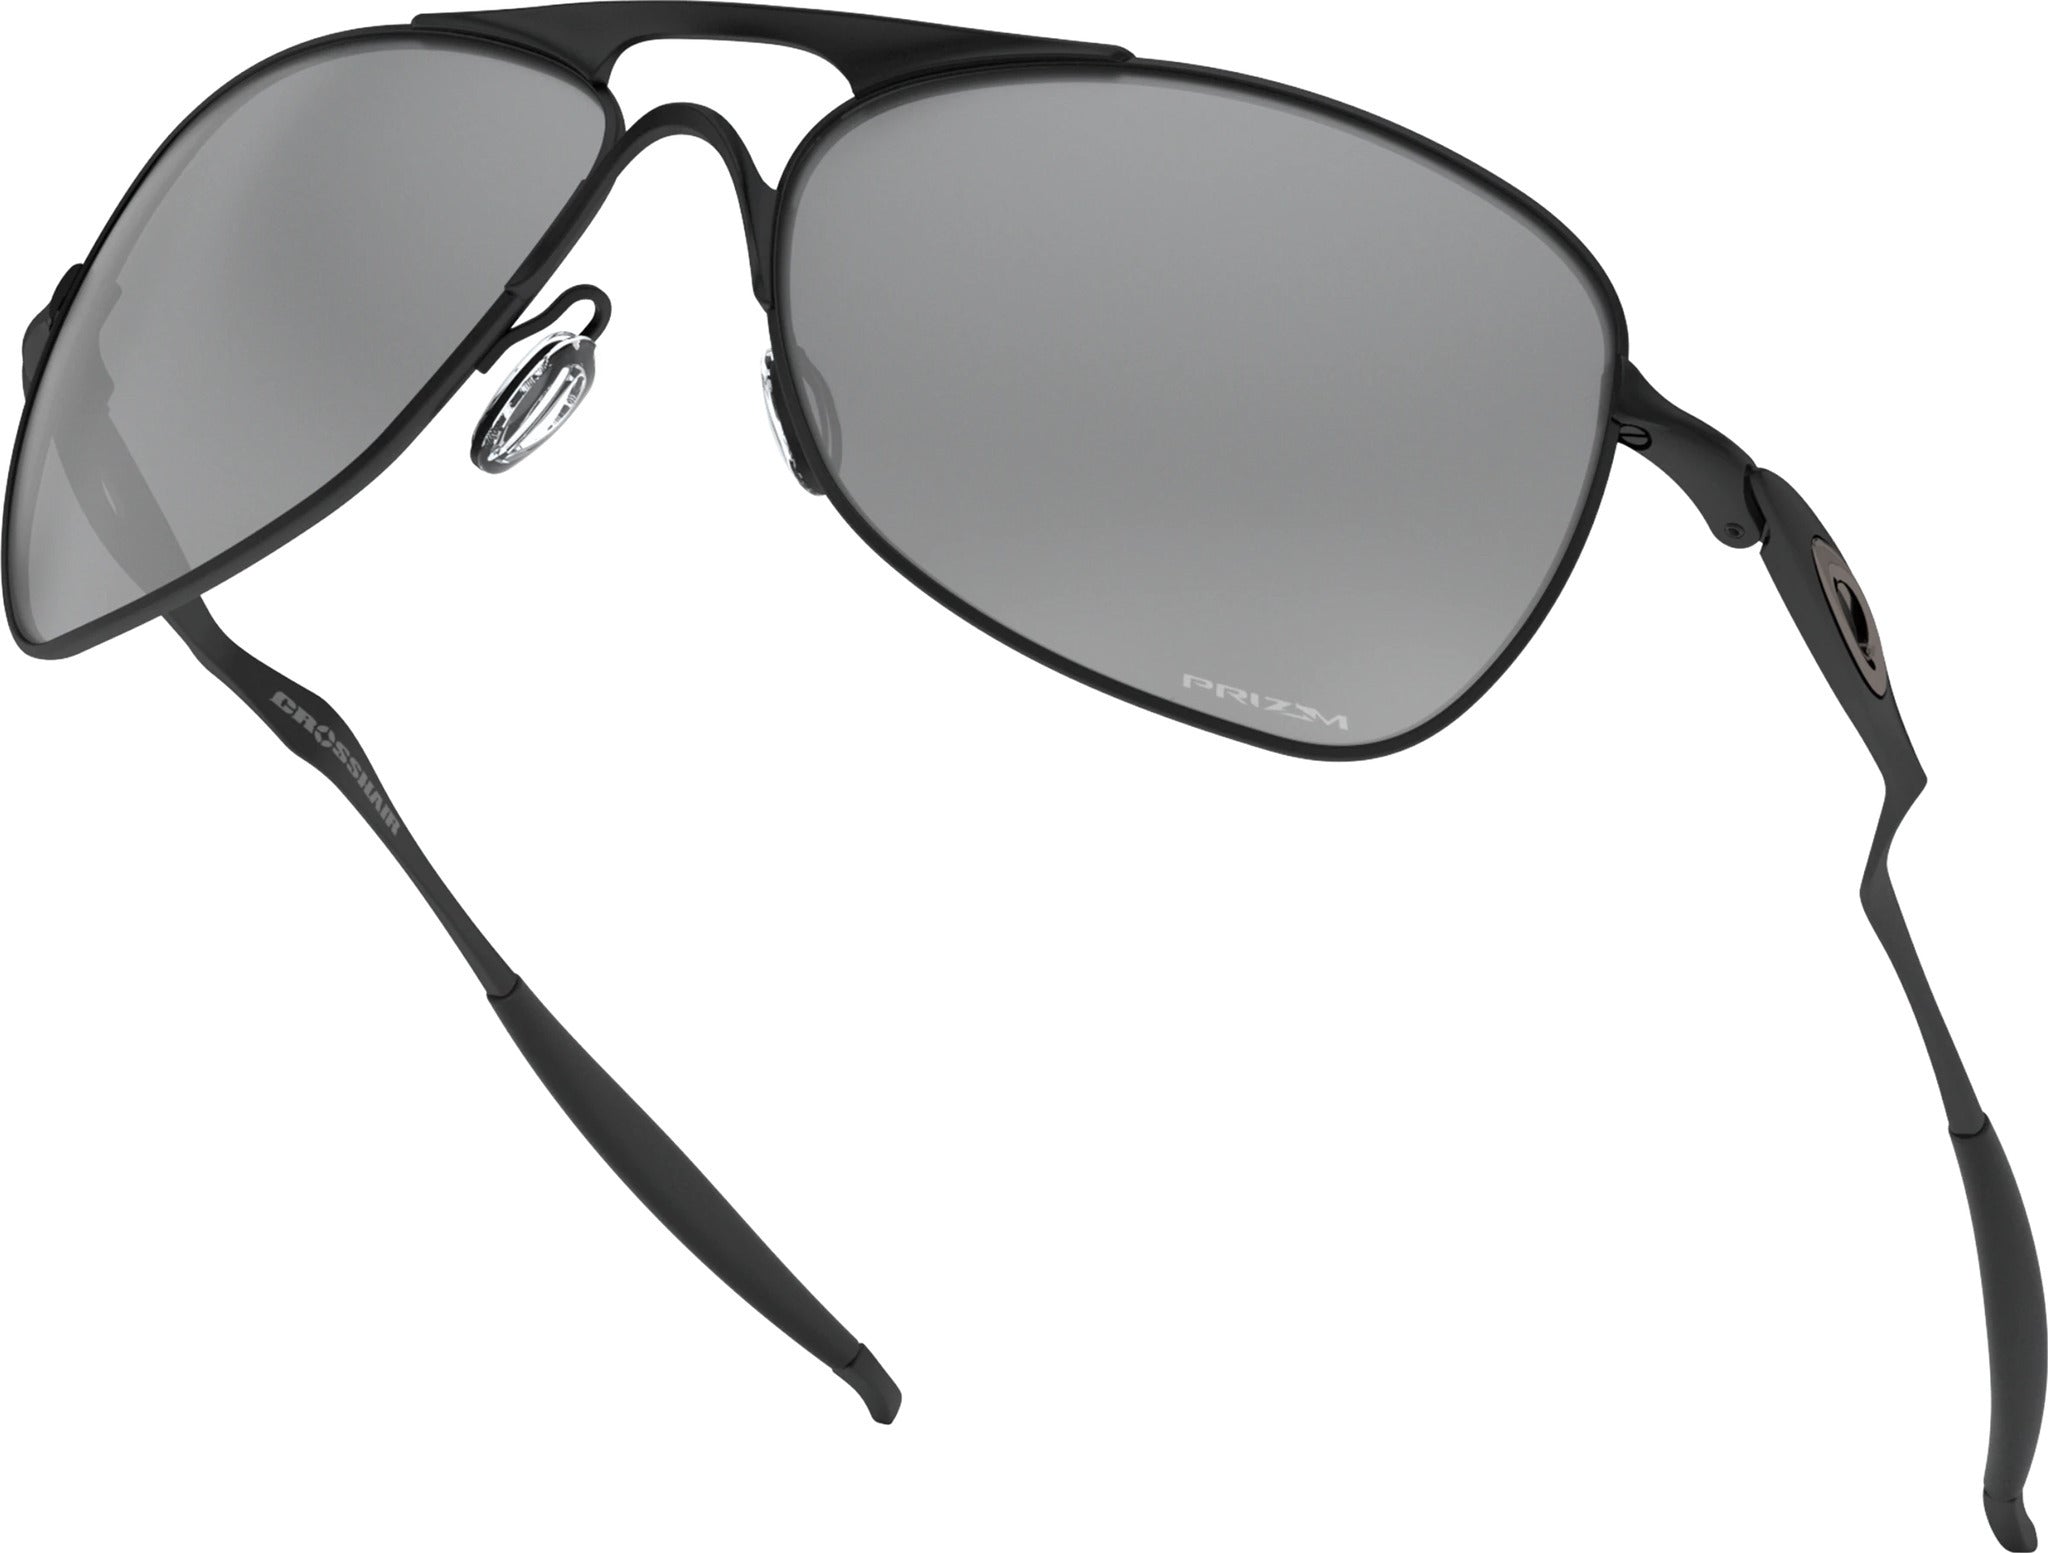 Oakley Crosshair Sunglasses - Matte Black Frame - Prizm Black Iridium Lens  - Men's